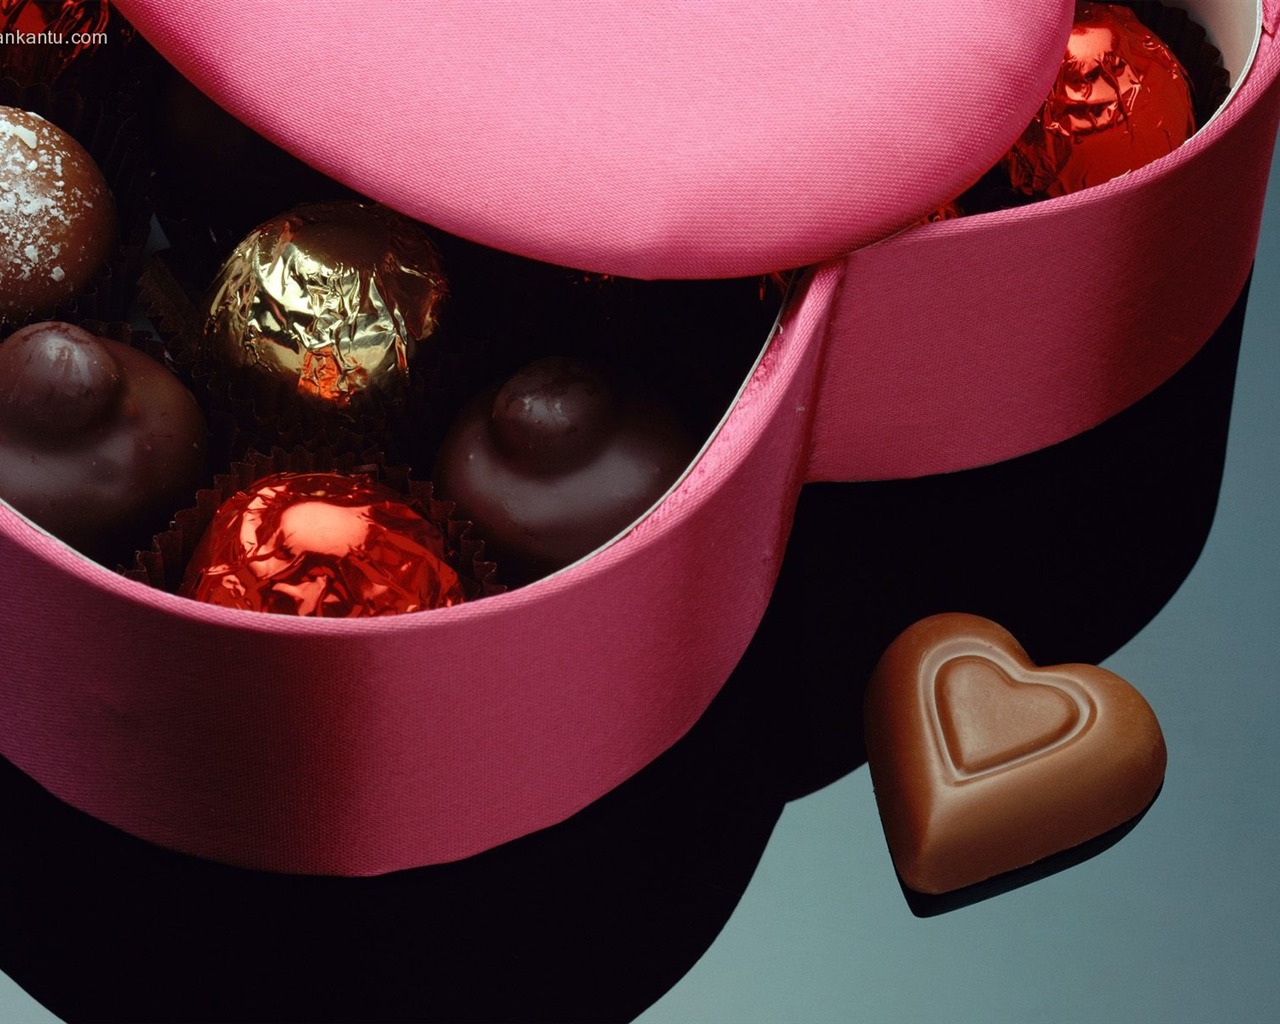 La tinta indeleble Día de San Valentín de chocolate #2 - 1280x1024